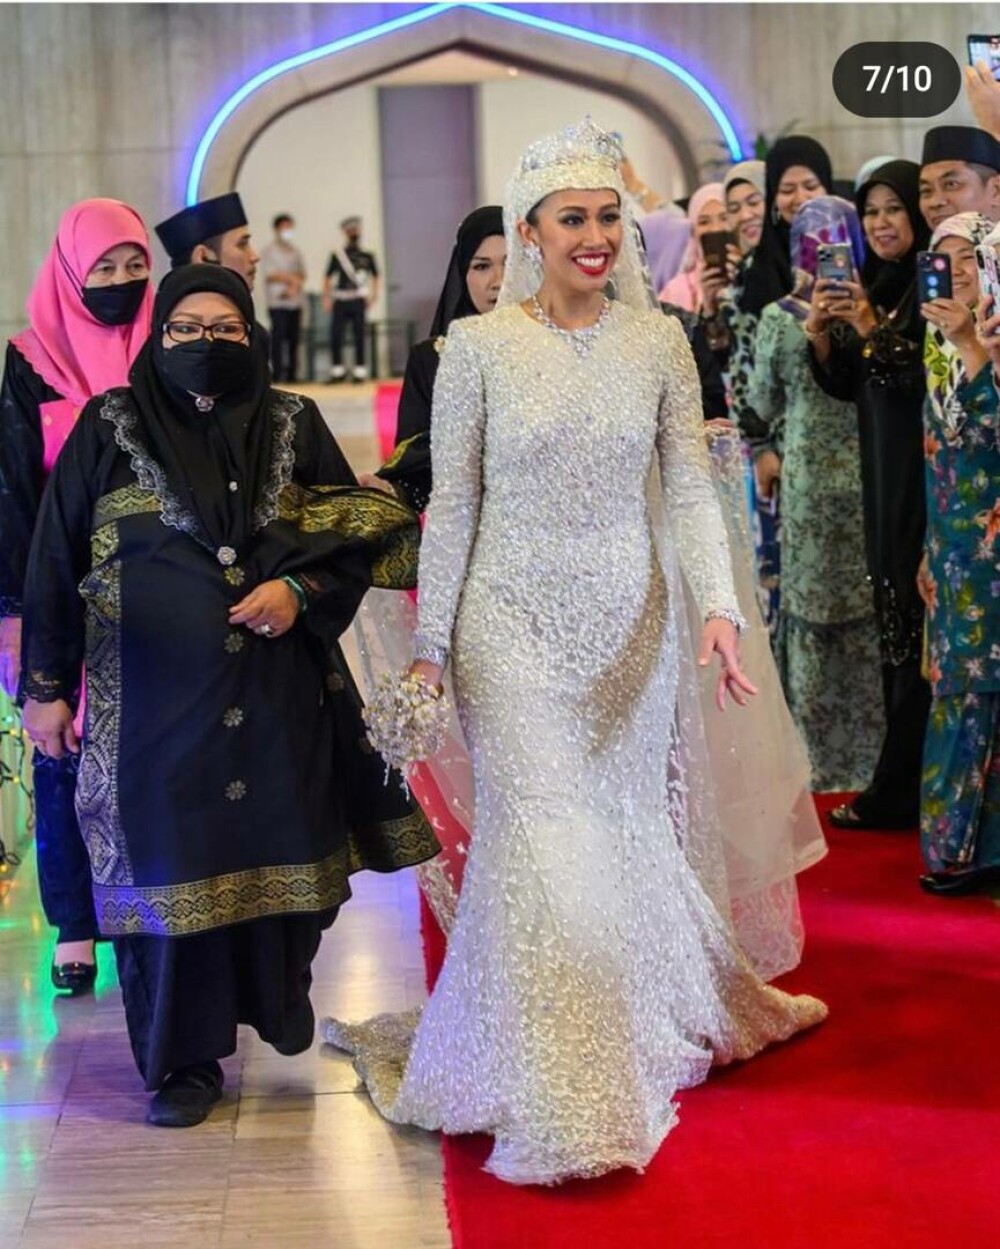 Nuntă regală fastuoasă în Brunei. Prințesa Azemah Bolkiah s-a căsătorit cu verișorul ei, prințul Muda Bahar - GALERIE FOTO - Imaginea 2